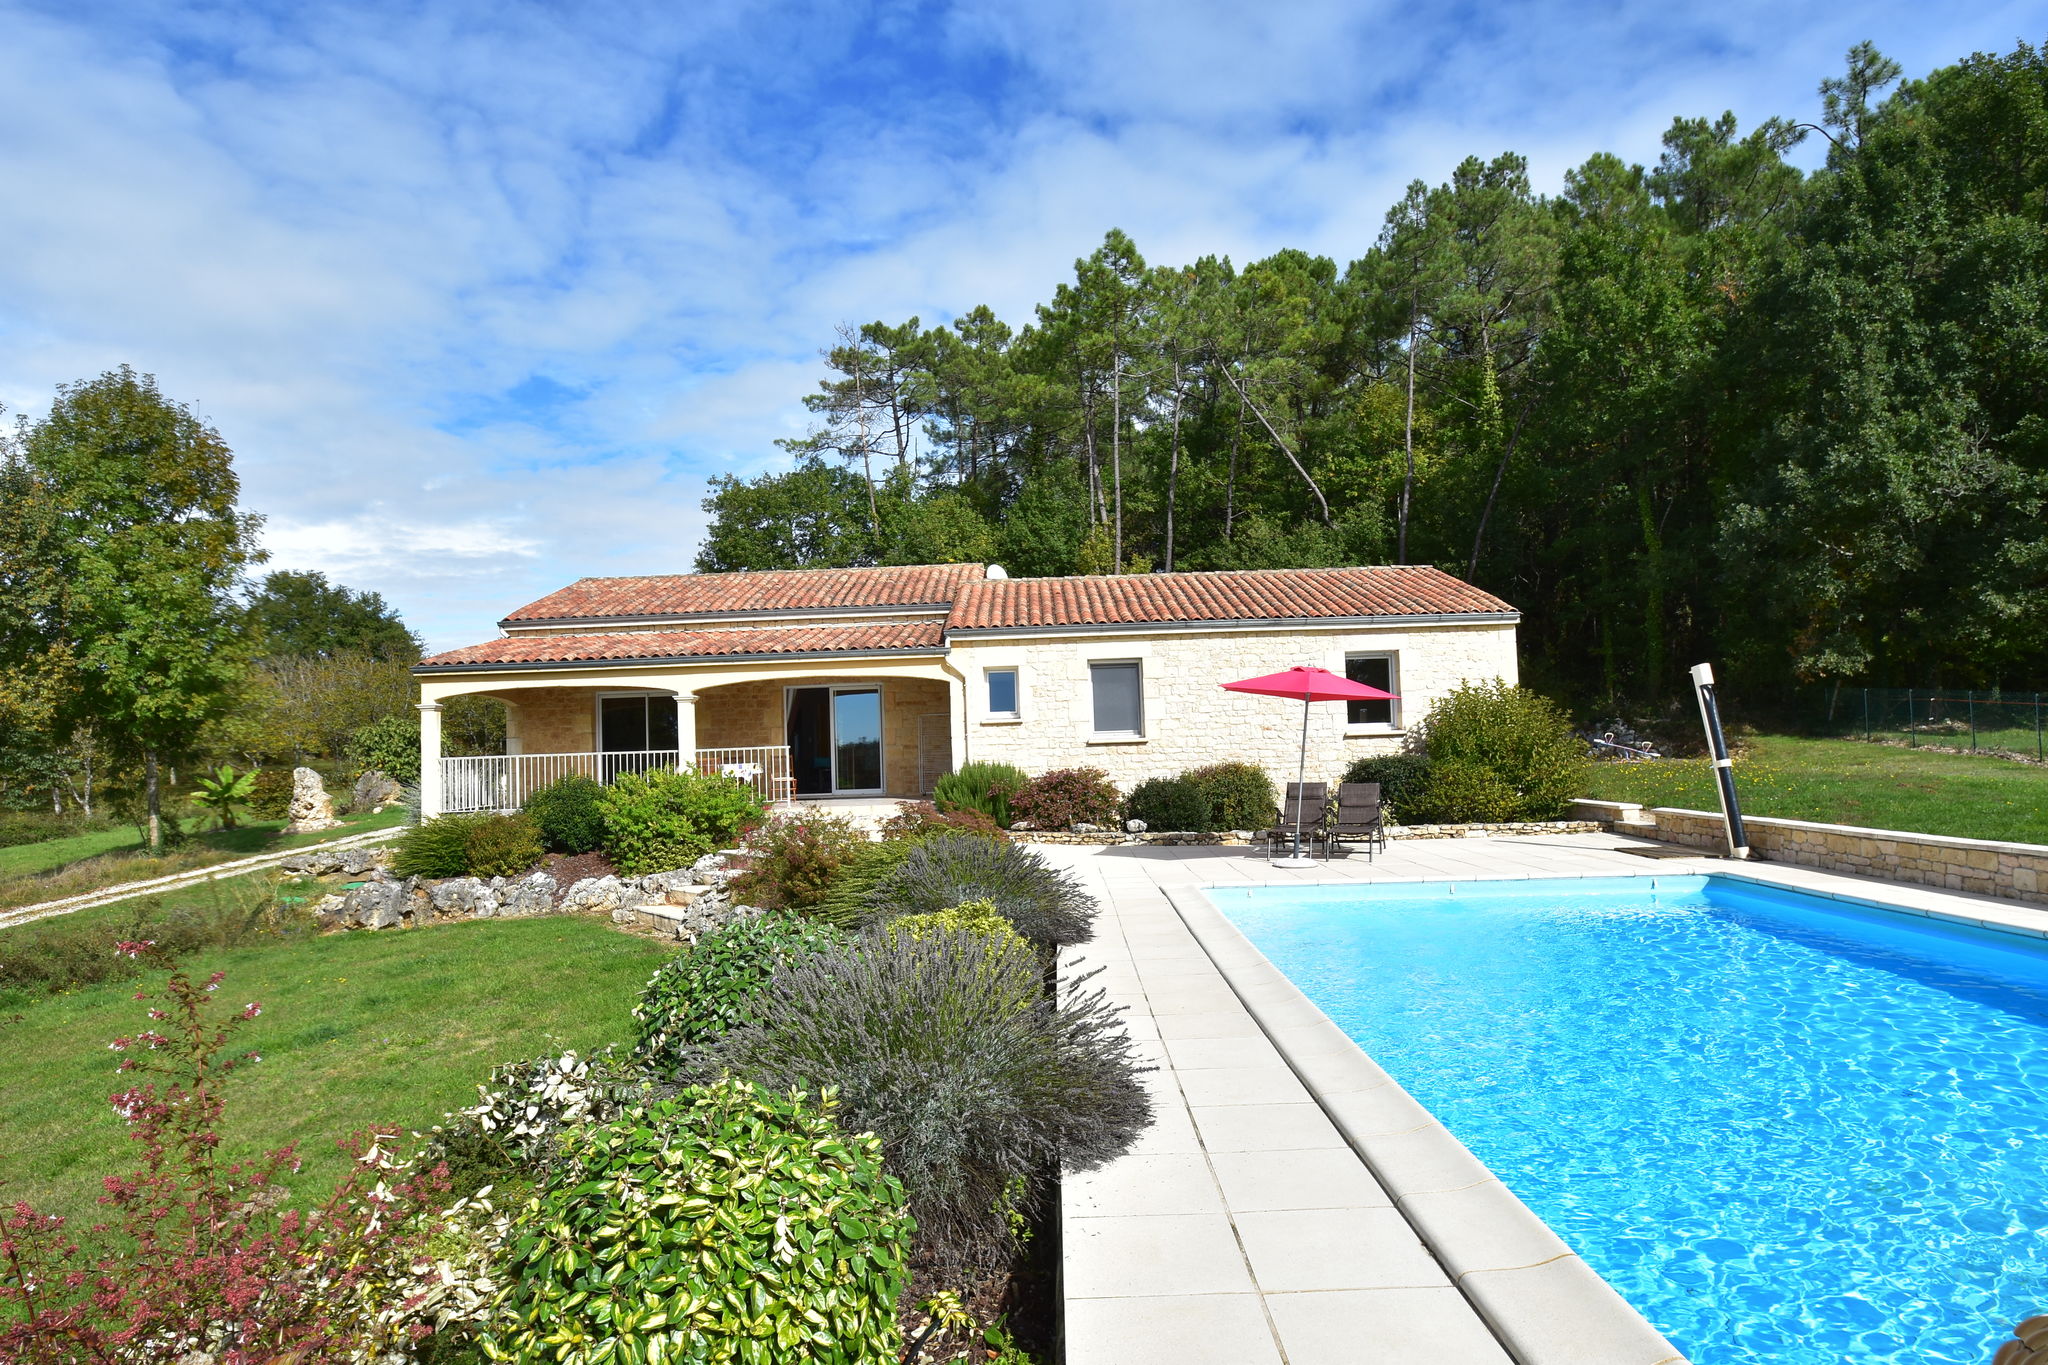 Vakantiehuis in Montcléra, met zonnige tuin, speeltoestellen en privézwembad